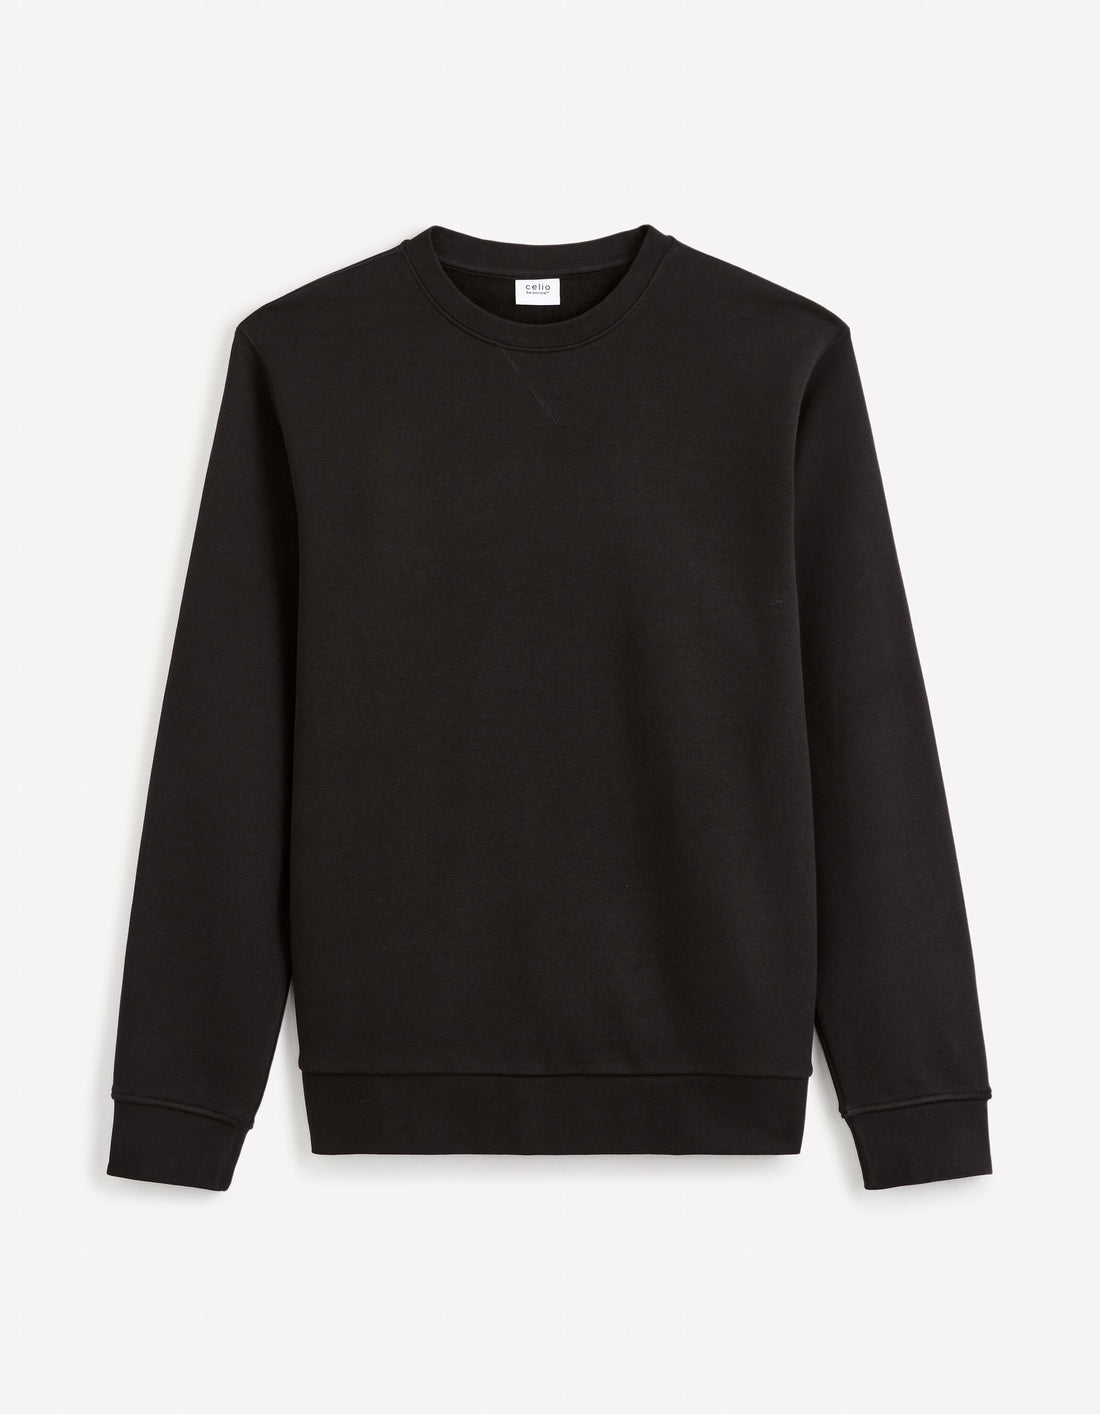 Round Neck Sweatshirt 100% Cotton_FESEVEN_BLACK_01